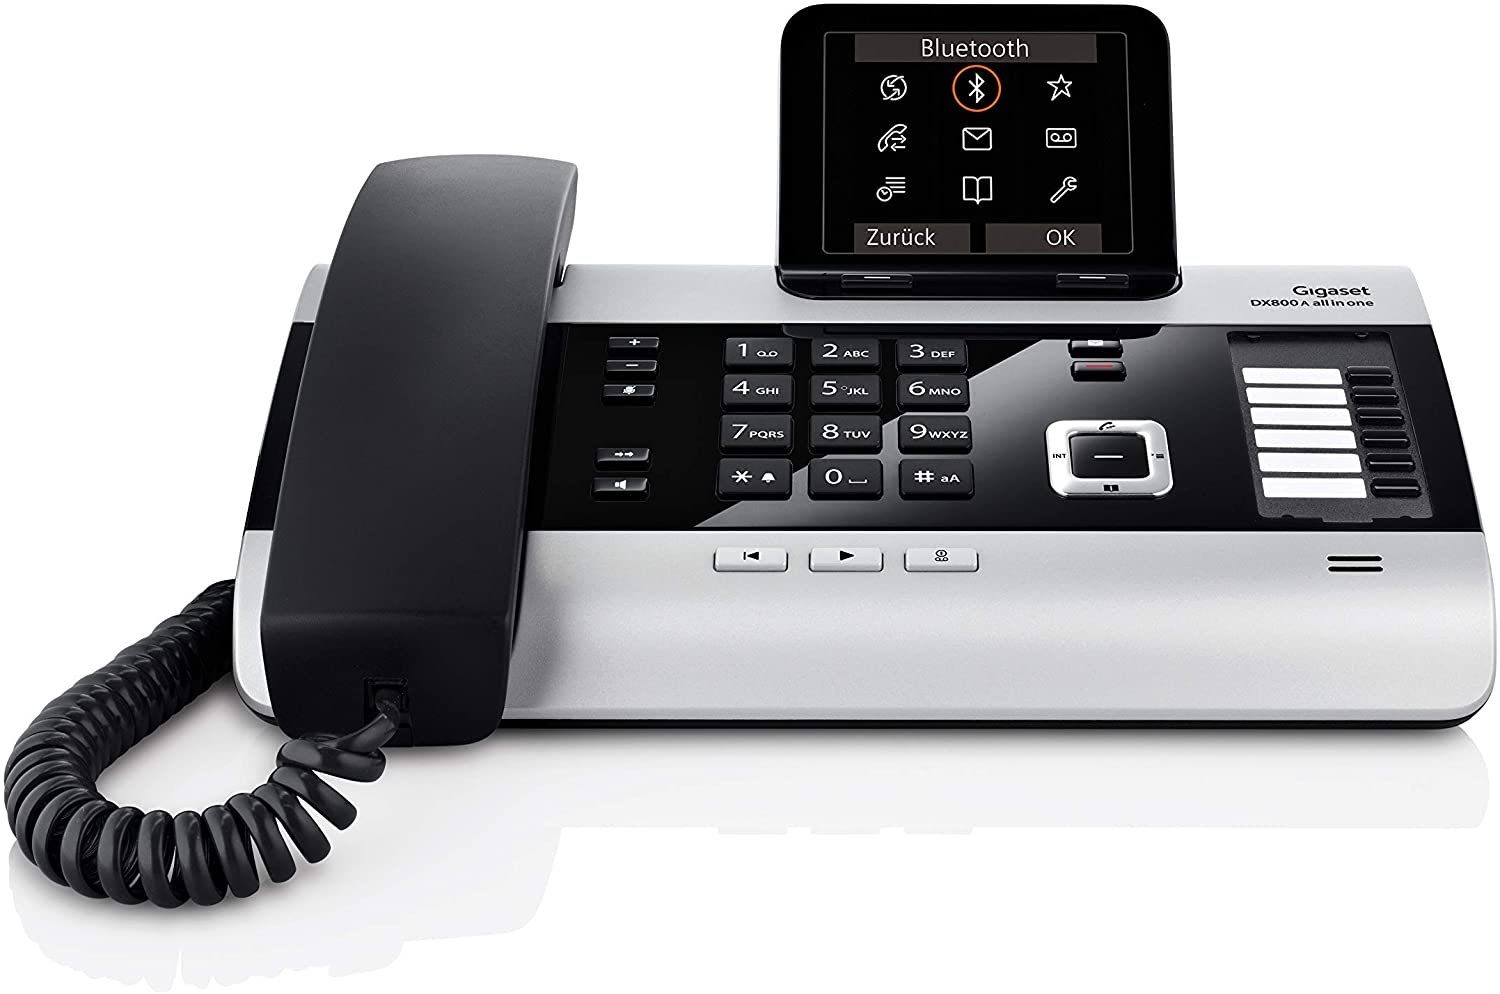 Integrierte All-In-One Bluetooth Gigaset Schnurgebundenes Telefon & Bluetooth-Funktionalität Geräte), Gigaset DX800A (Internet-Telefonie 6 ISDN-Anschluss & Telefon DECT-ISDN DECT- für